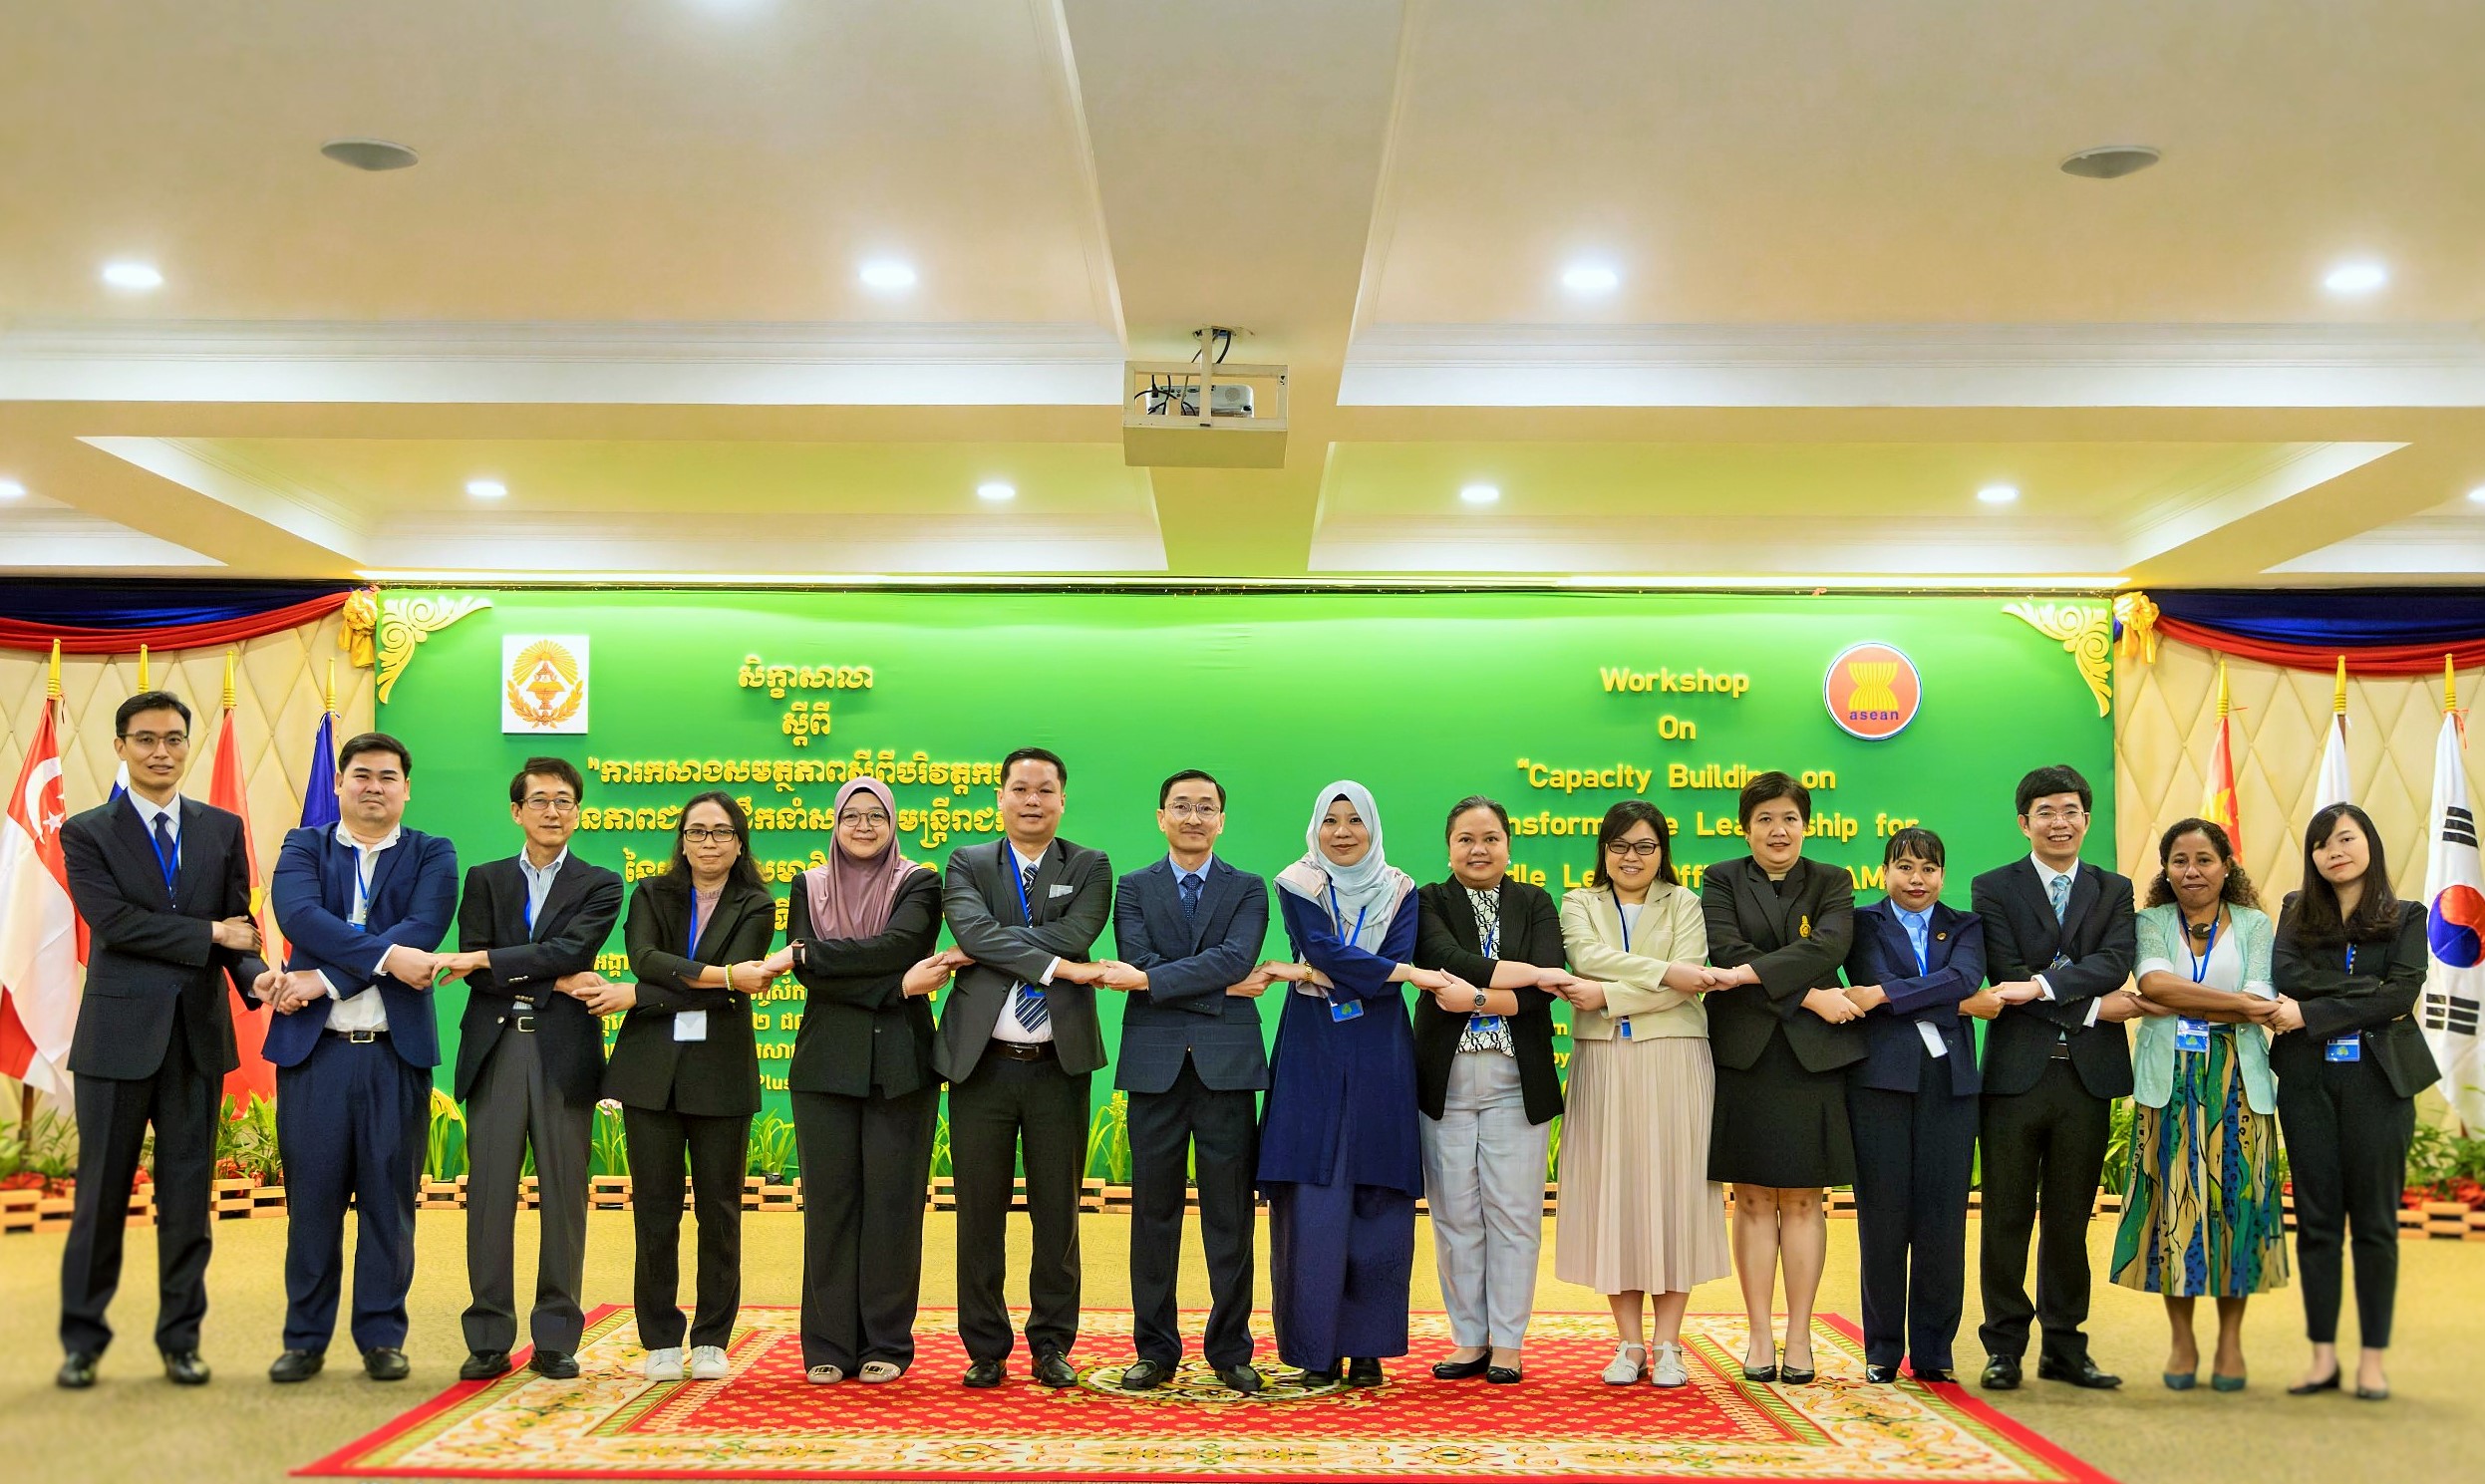 Hội thảo “Xây dựng năng lực về lãnh đạo chuyển đổi cho công chức bậc trung của các quốc gia thành viên ASEAN và Timor-Leste”